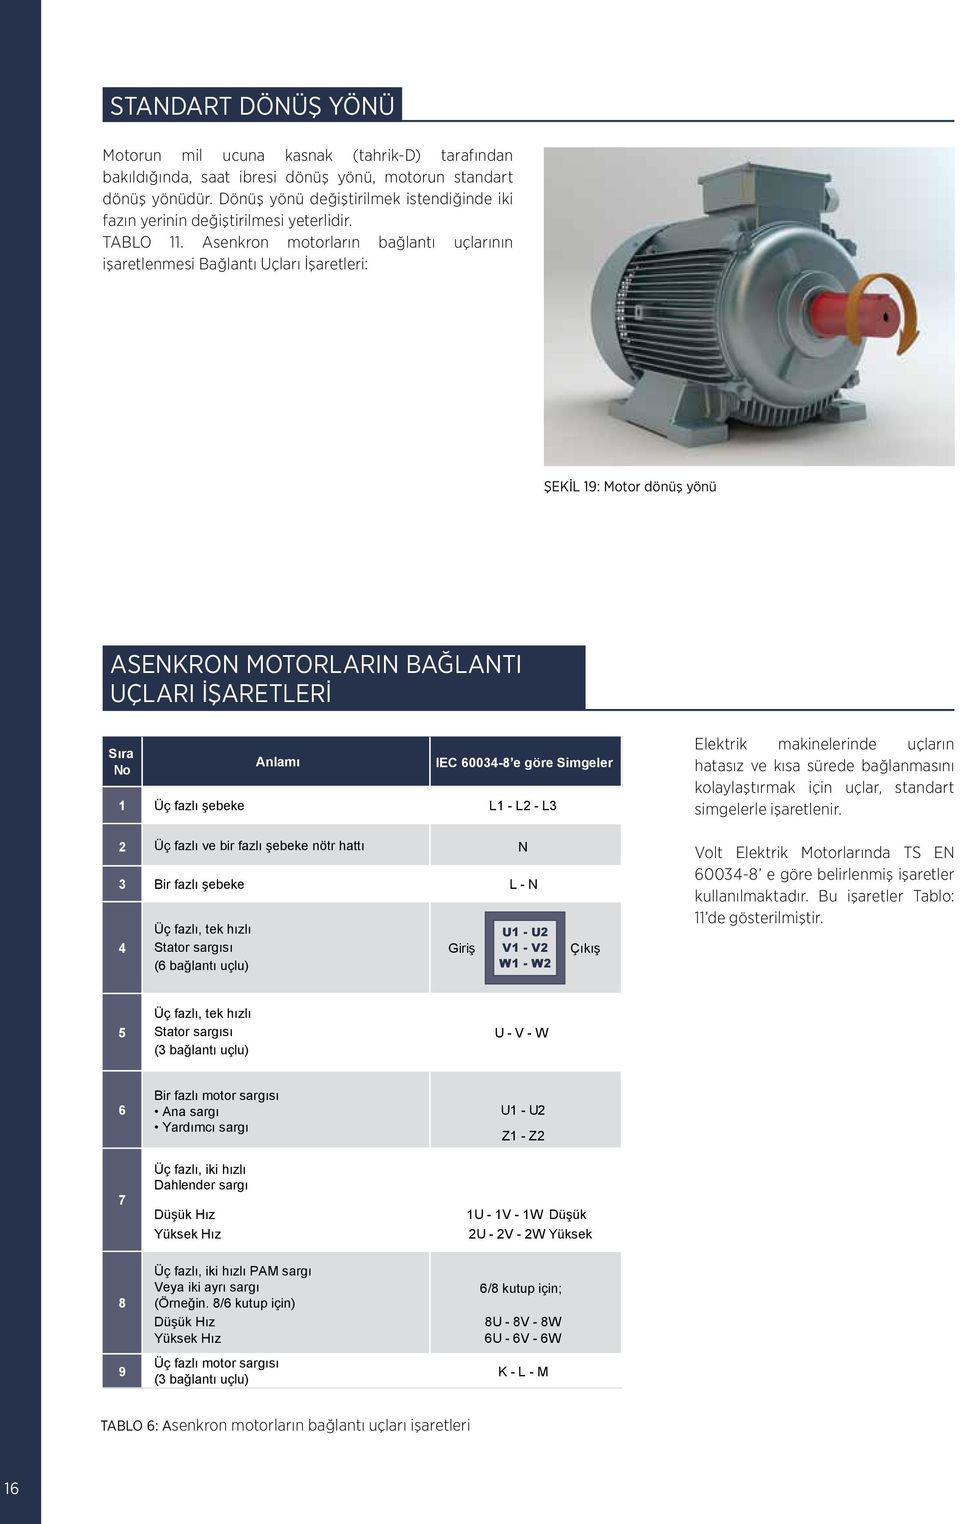 Asenkron motorların bağlantı uçlarının işaretlenmesi Bağlantı Uçları İşaretleri: ŞEKİL 19: Motor dönüş yönü ASENKRON MOTORLARIN BAĞLANTI UÇLARI İŞARETLERİ Sıra No 1 Üç fazlı şebeke Anlamı IEC 60034-8